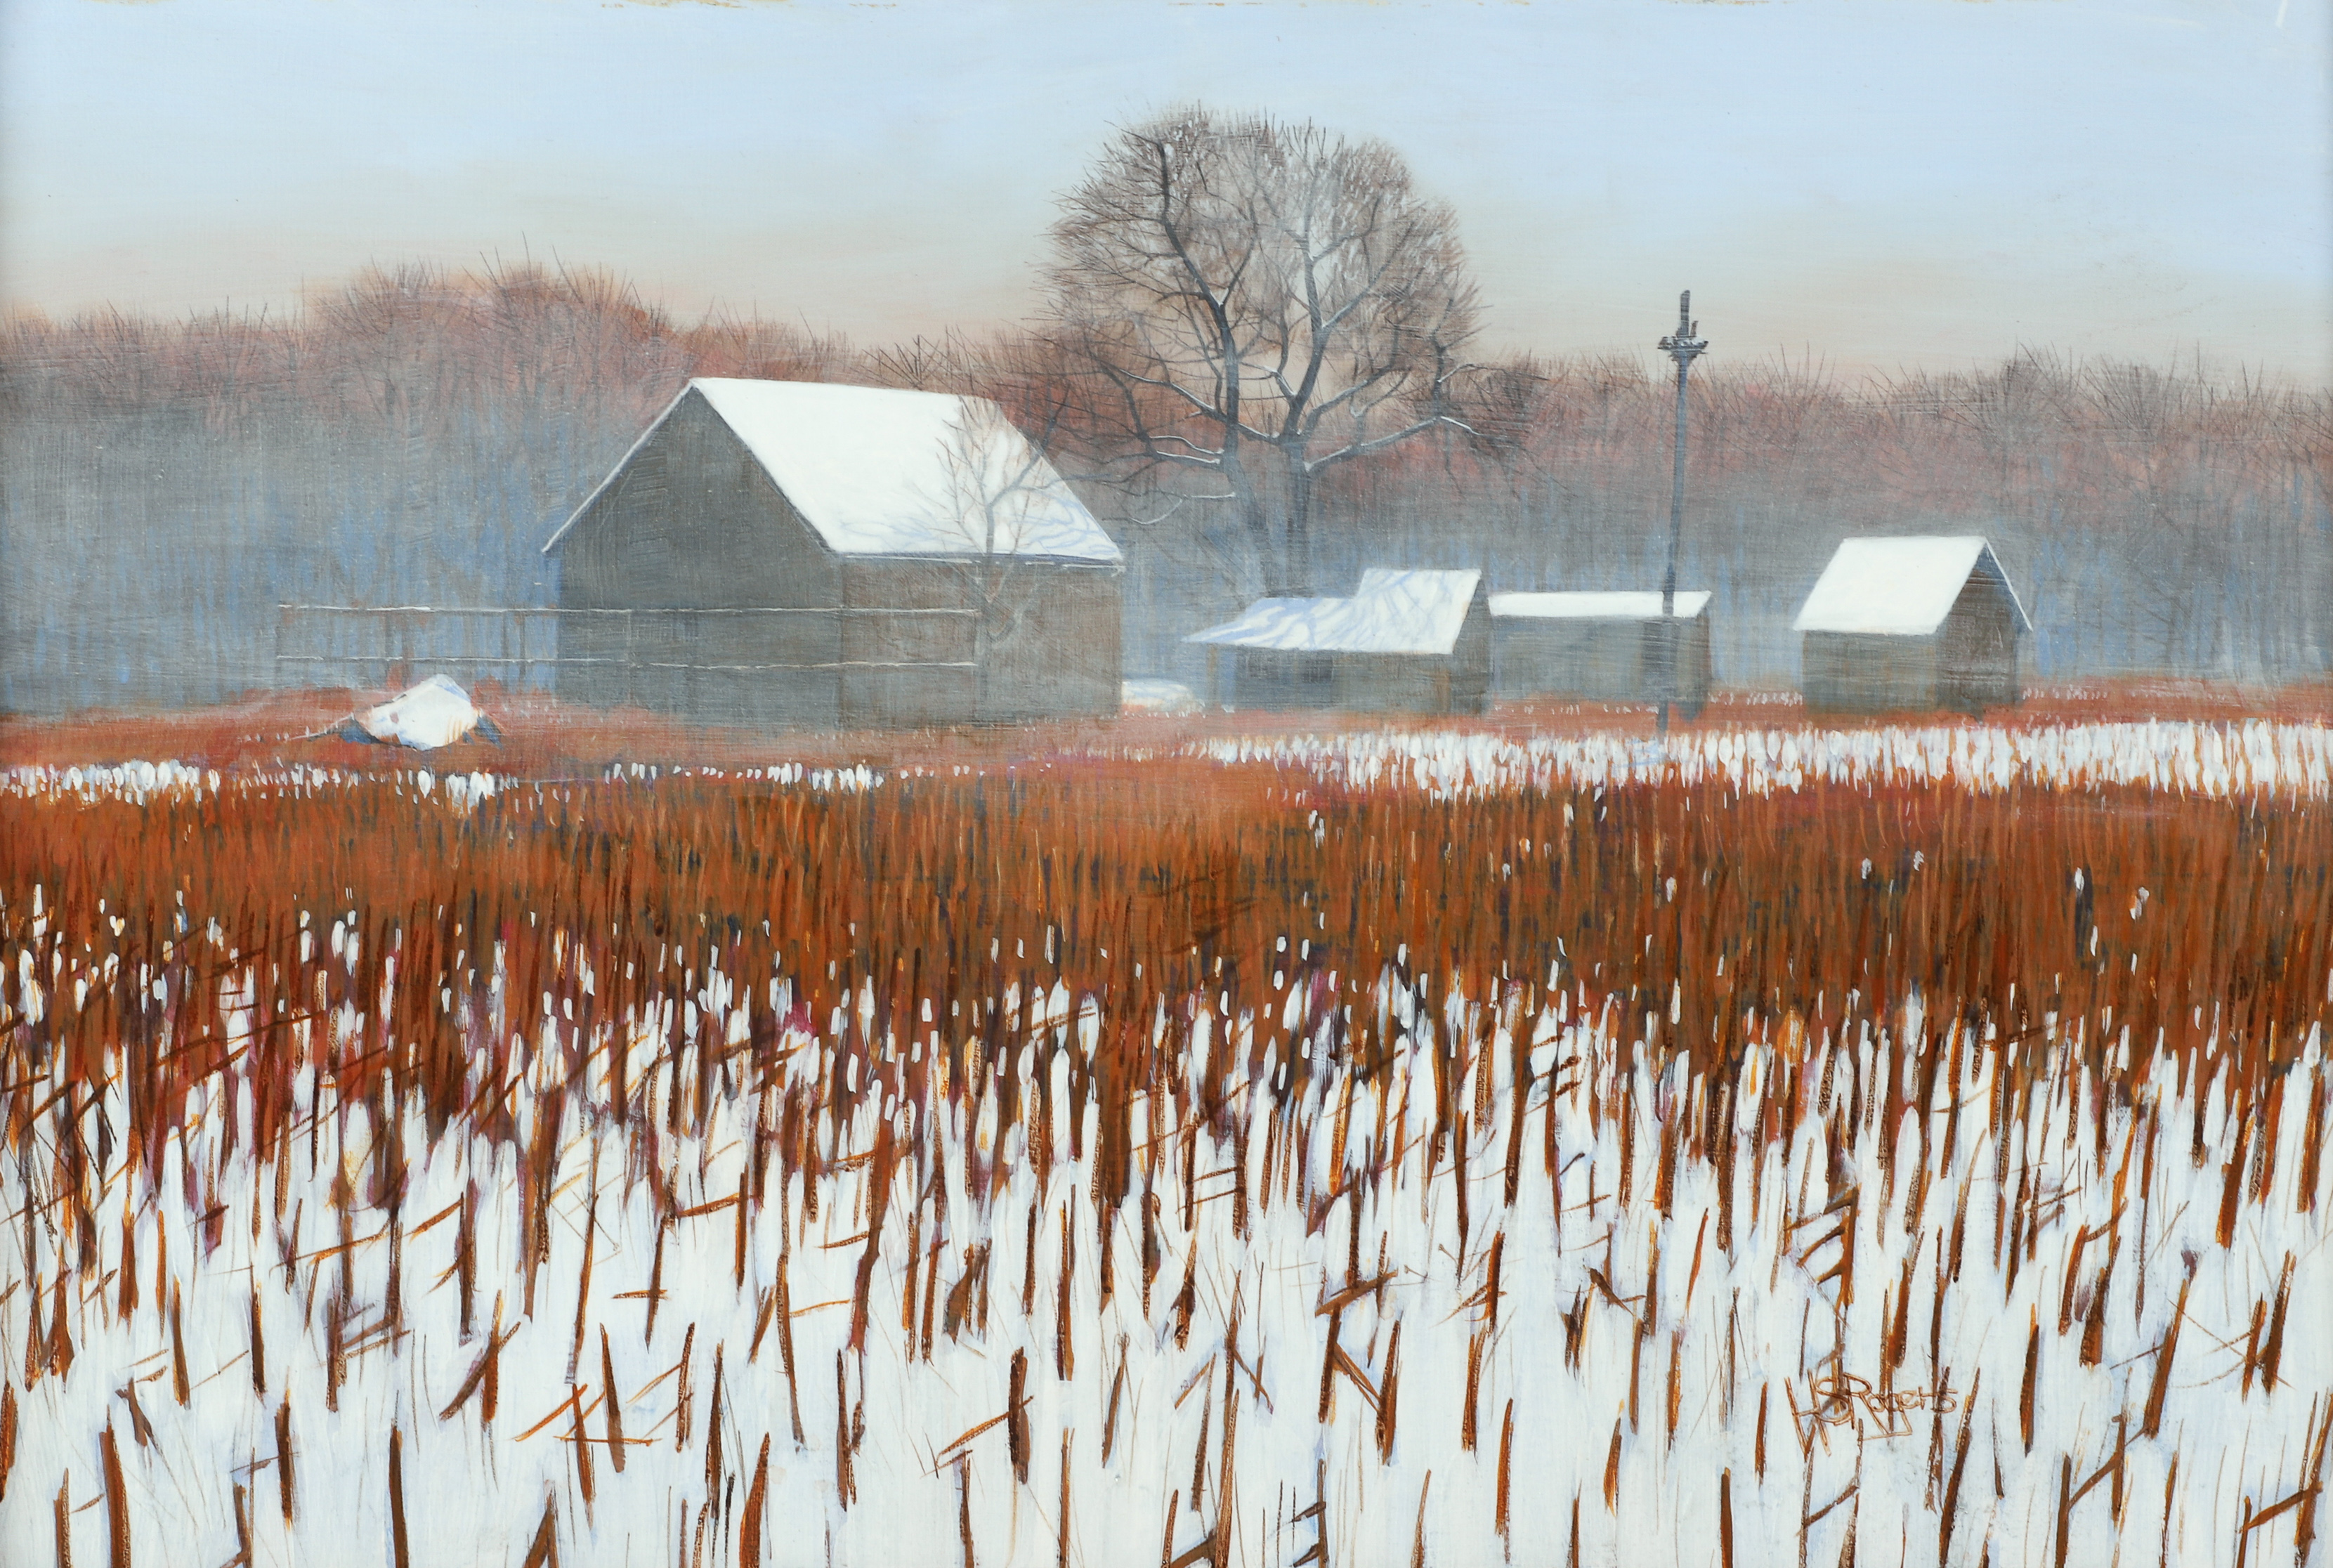 H S Rogers farm landscape painting 3b3aec